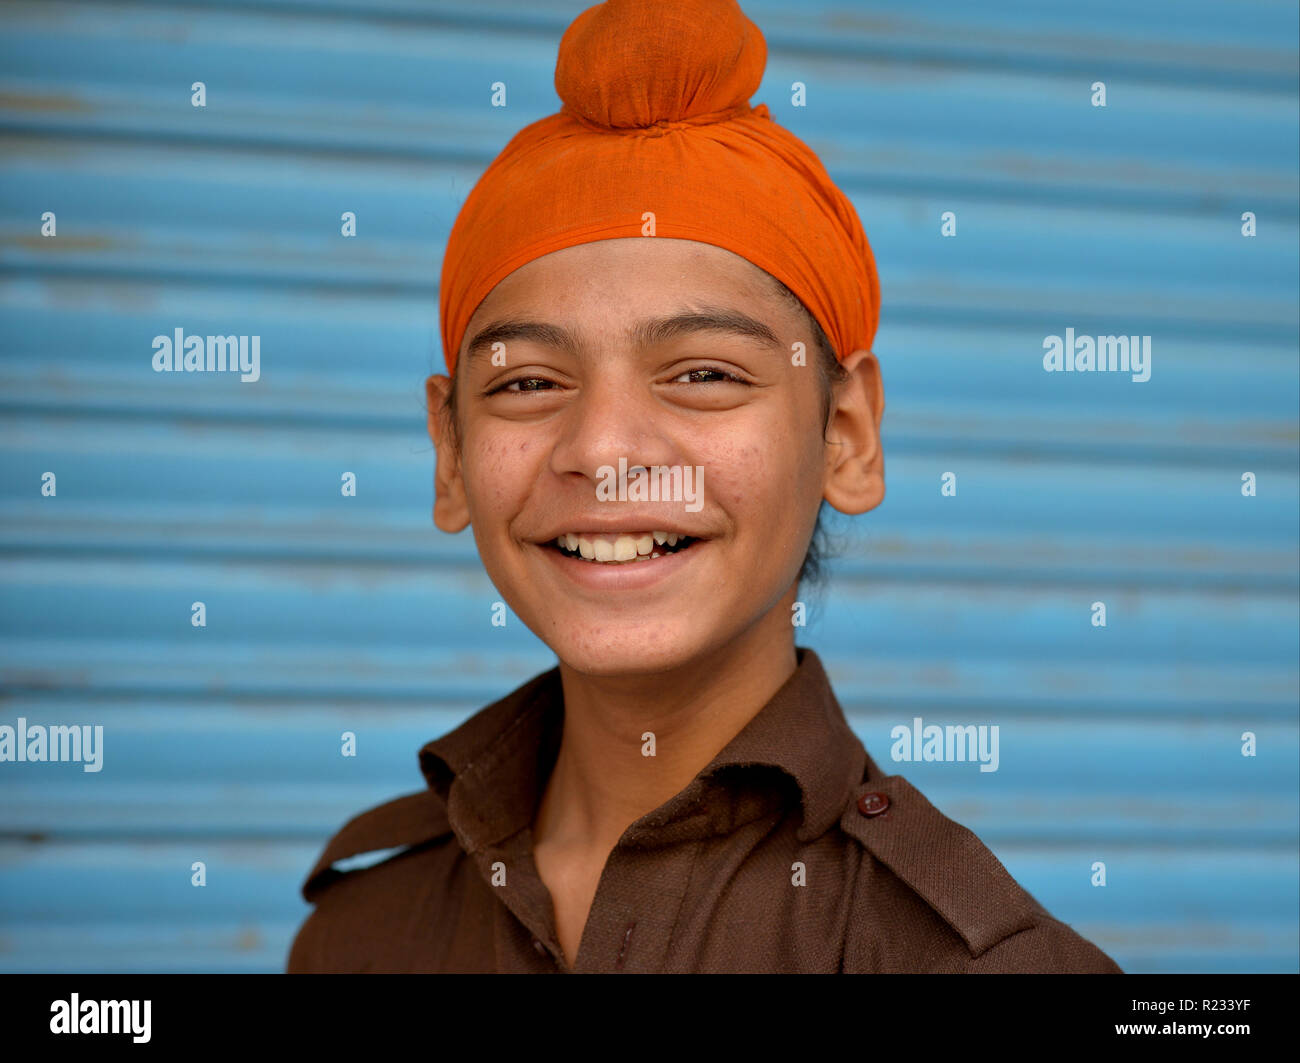 Sij indio jovencito lleva una naranja patka y sonrisas para la cámara. Foto de stock